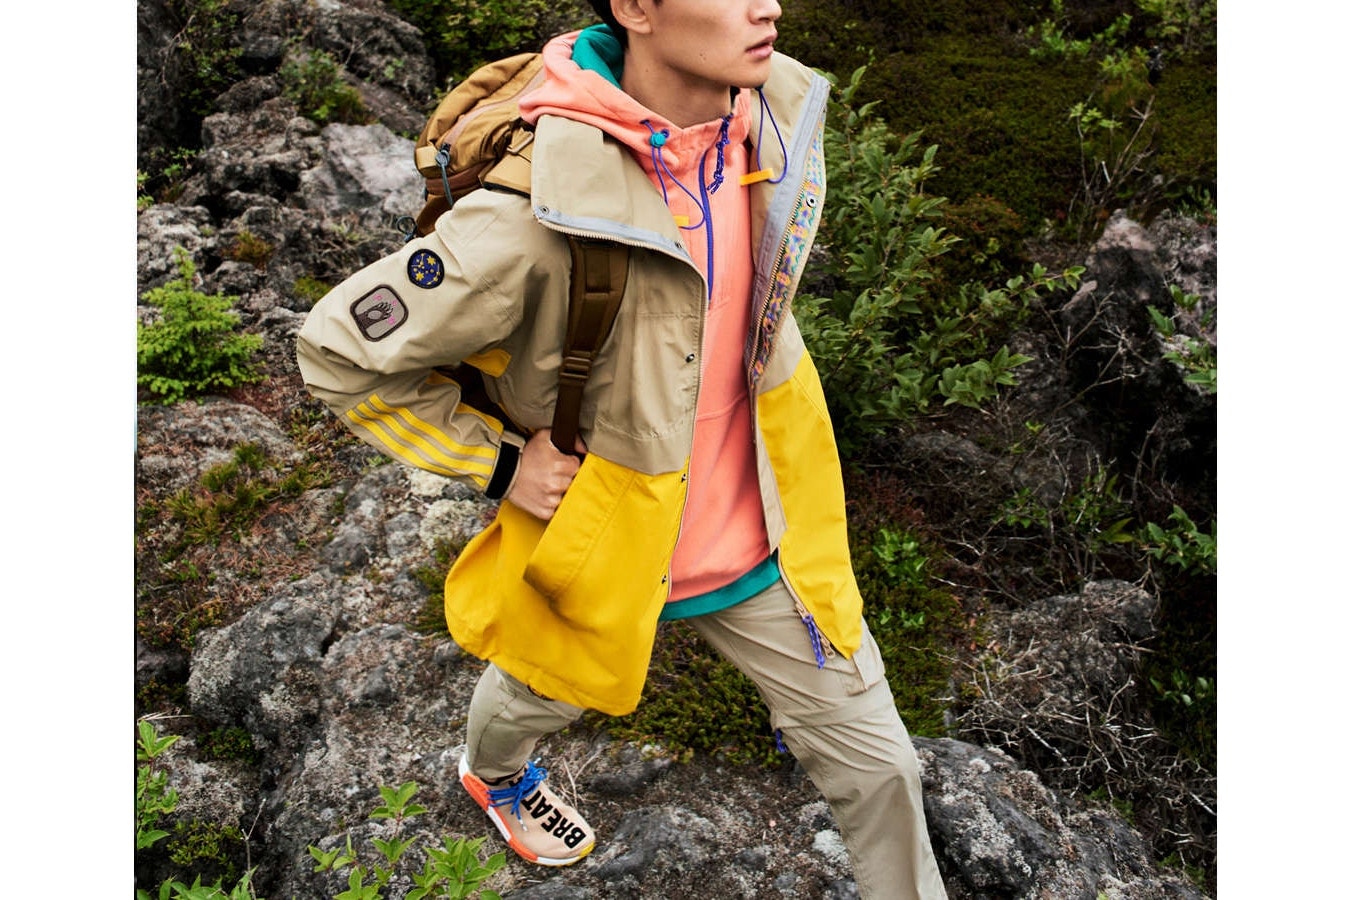 Pharrell Williams x adidas Originals よりLAハイキング文化から着想を得た“Statement Hiking”コレクションが登場 ファレル・ウィリアムスらしいヒネリの効いたカラーパレットに身を包んだアウトドアグッズがラインアップ